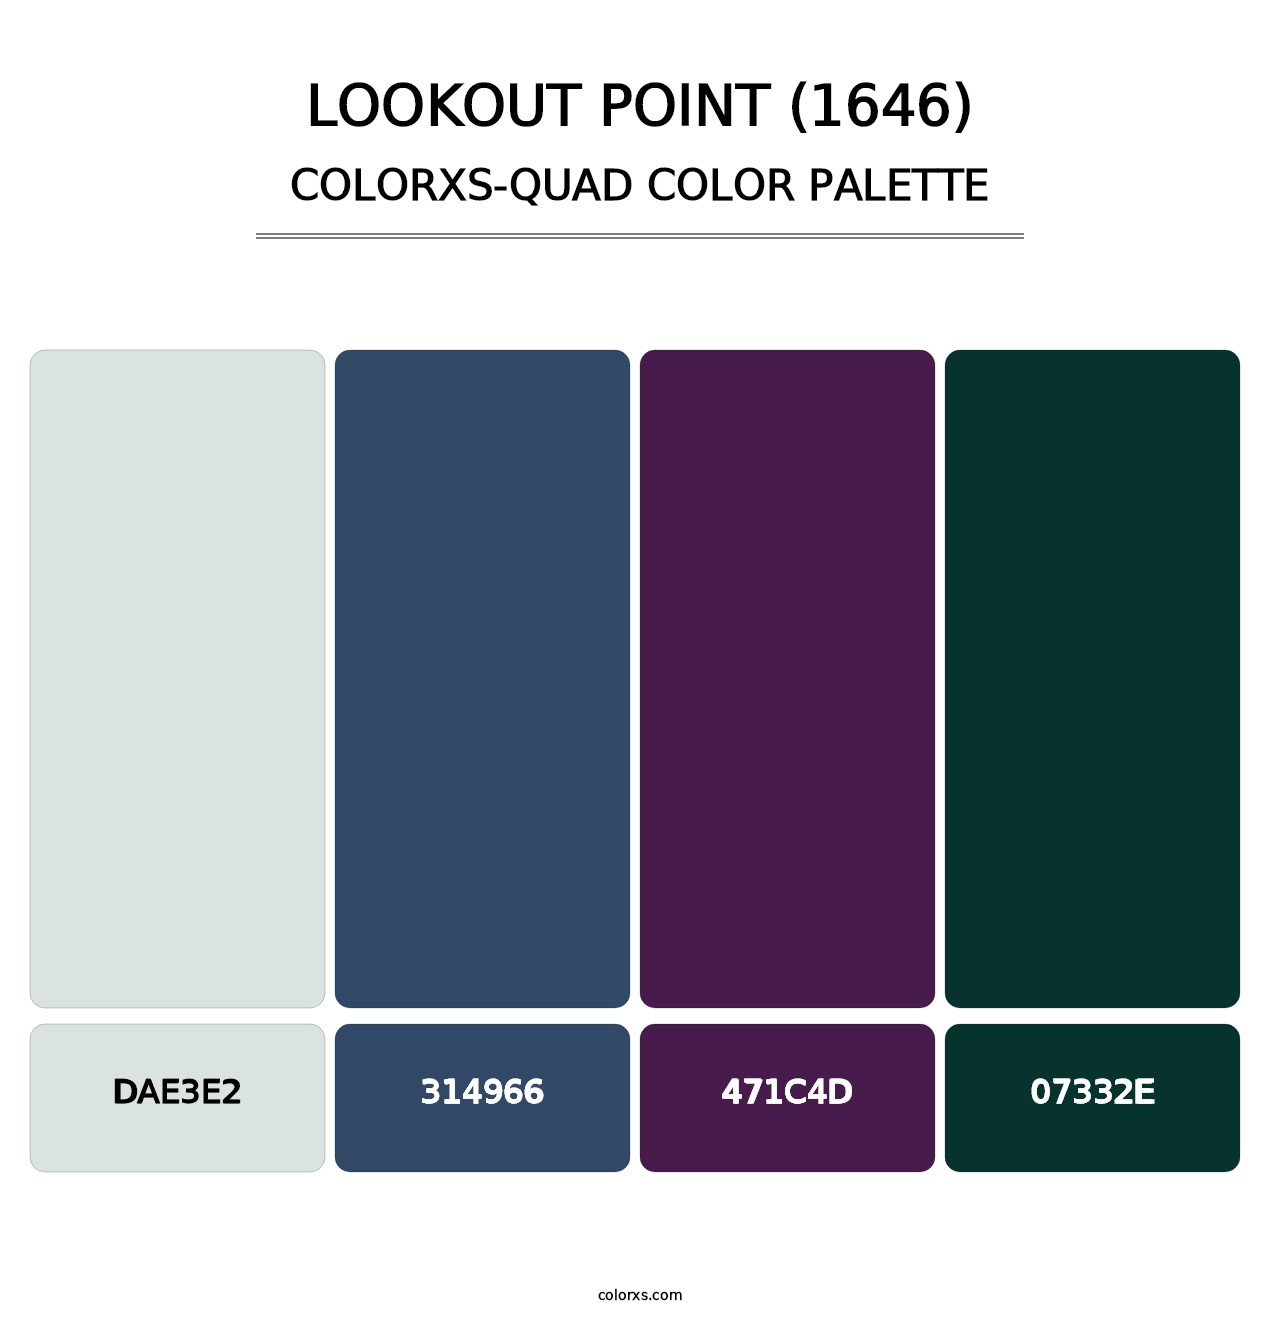 Lookout Point (1646) - Colorxs Quad Palette